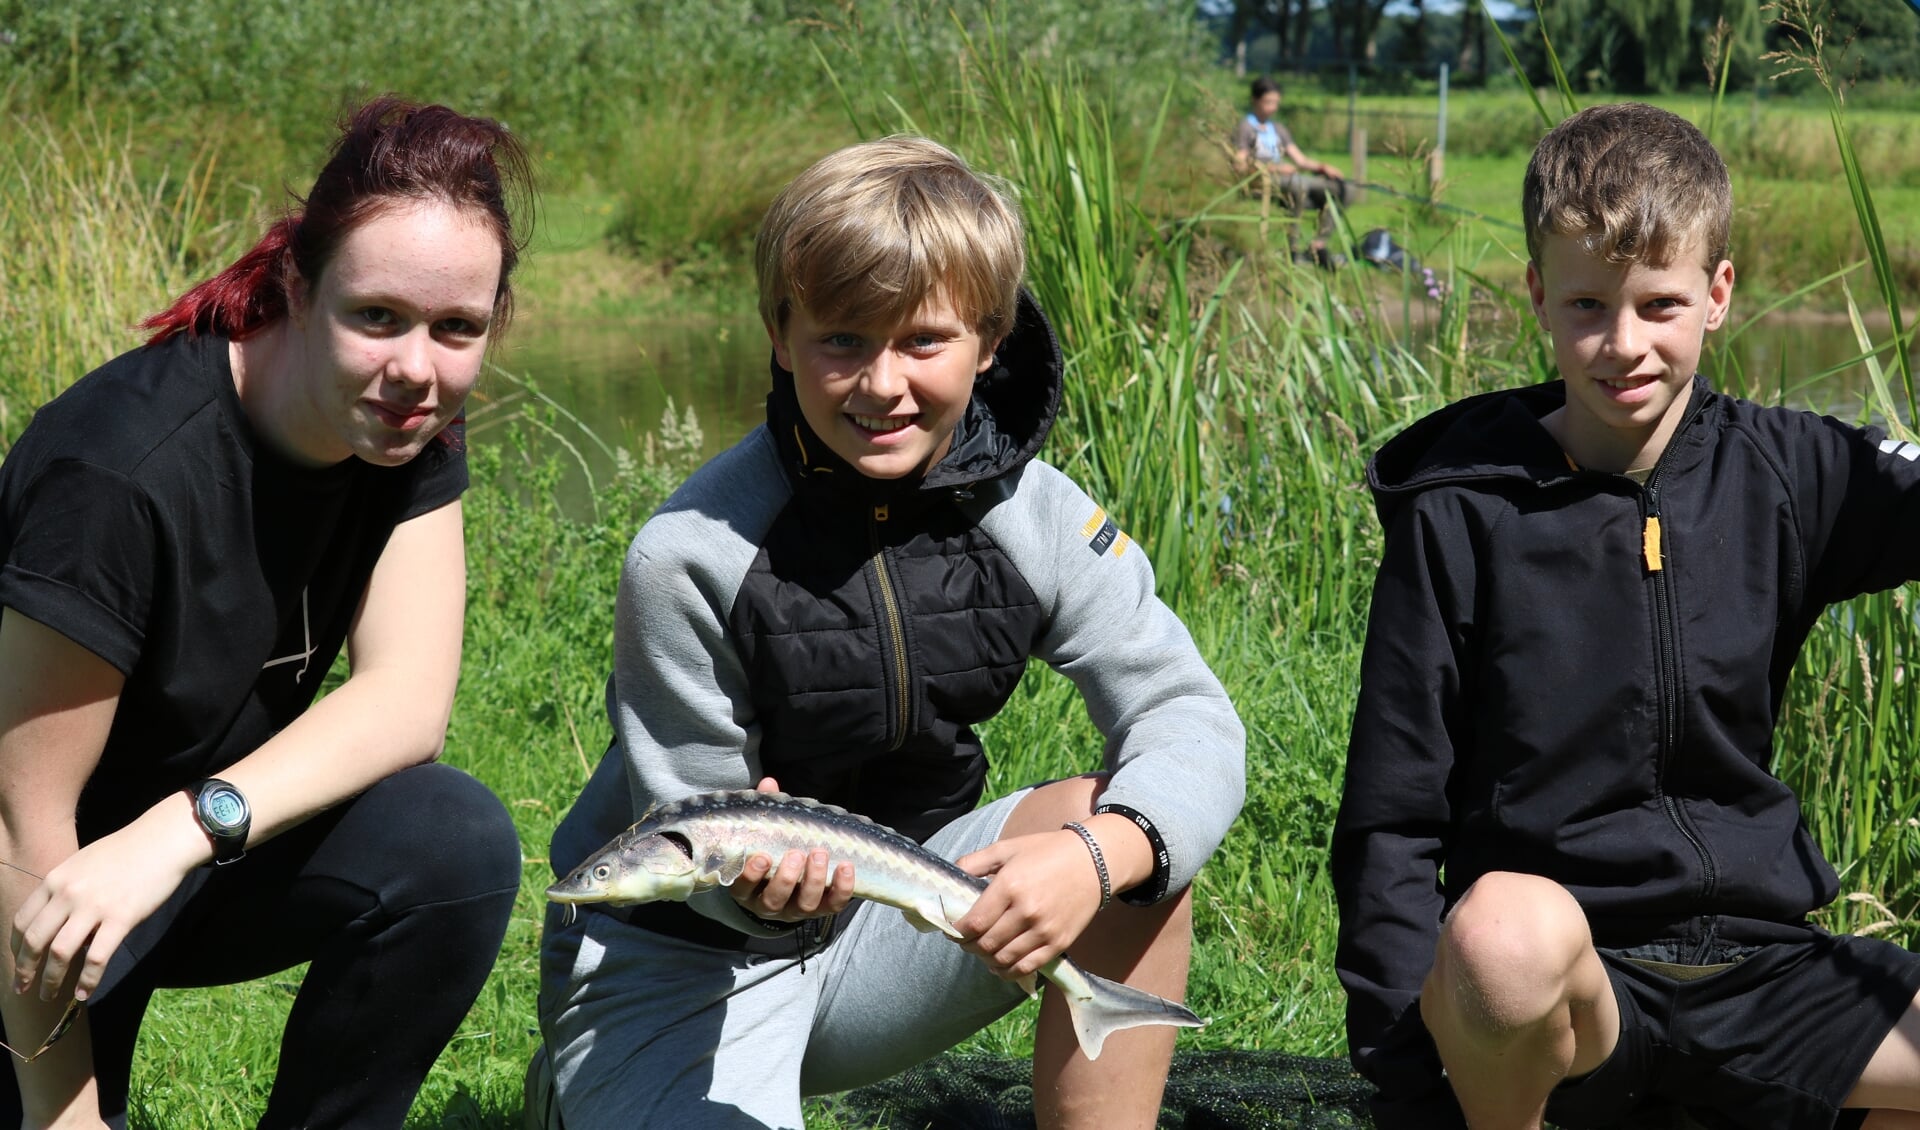 V.l.n.r. Gwendola Hietbrink (14), Tim van Wenum (12) en Gijs Keizer (11). Foto: Arjen Dieperink